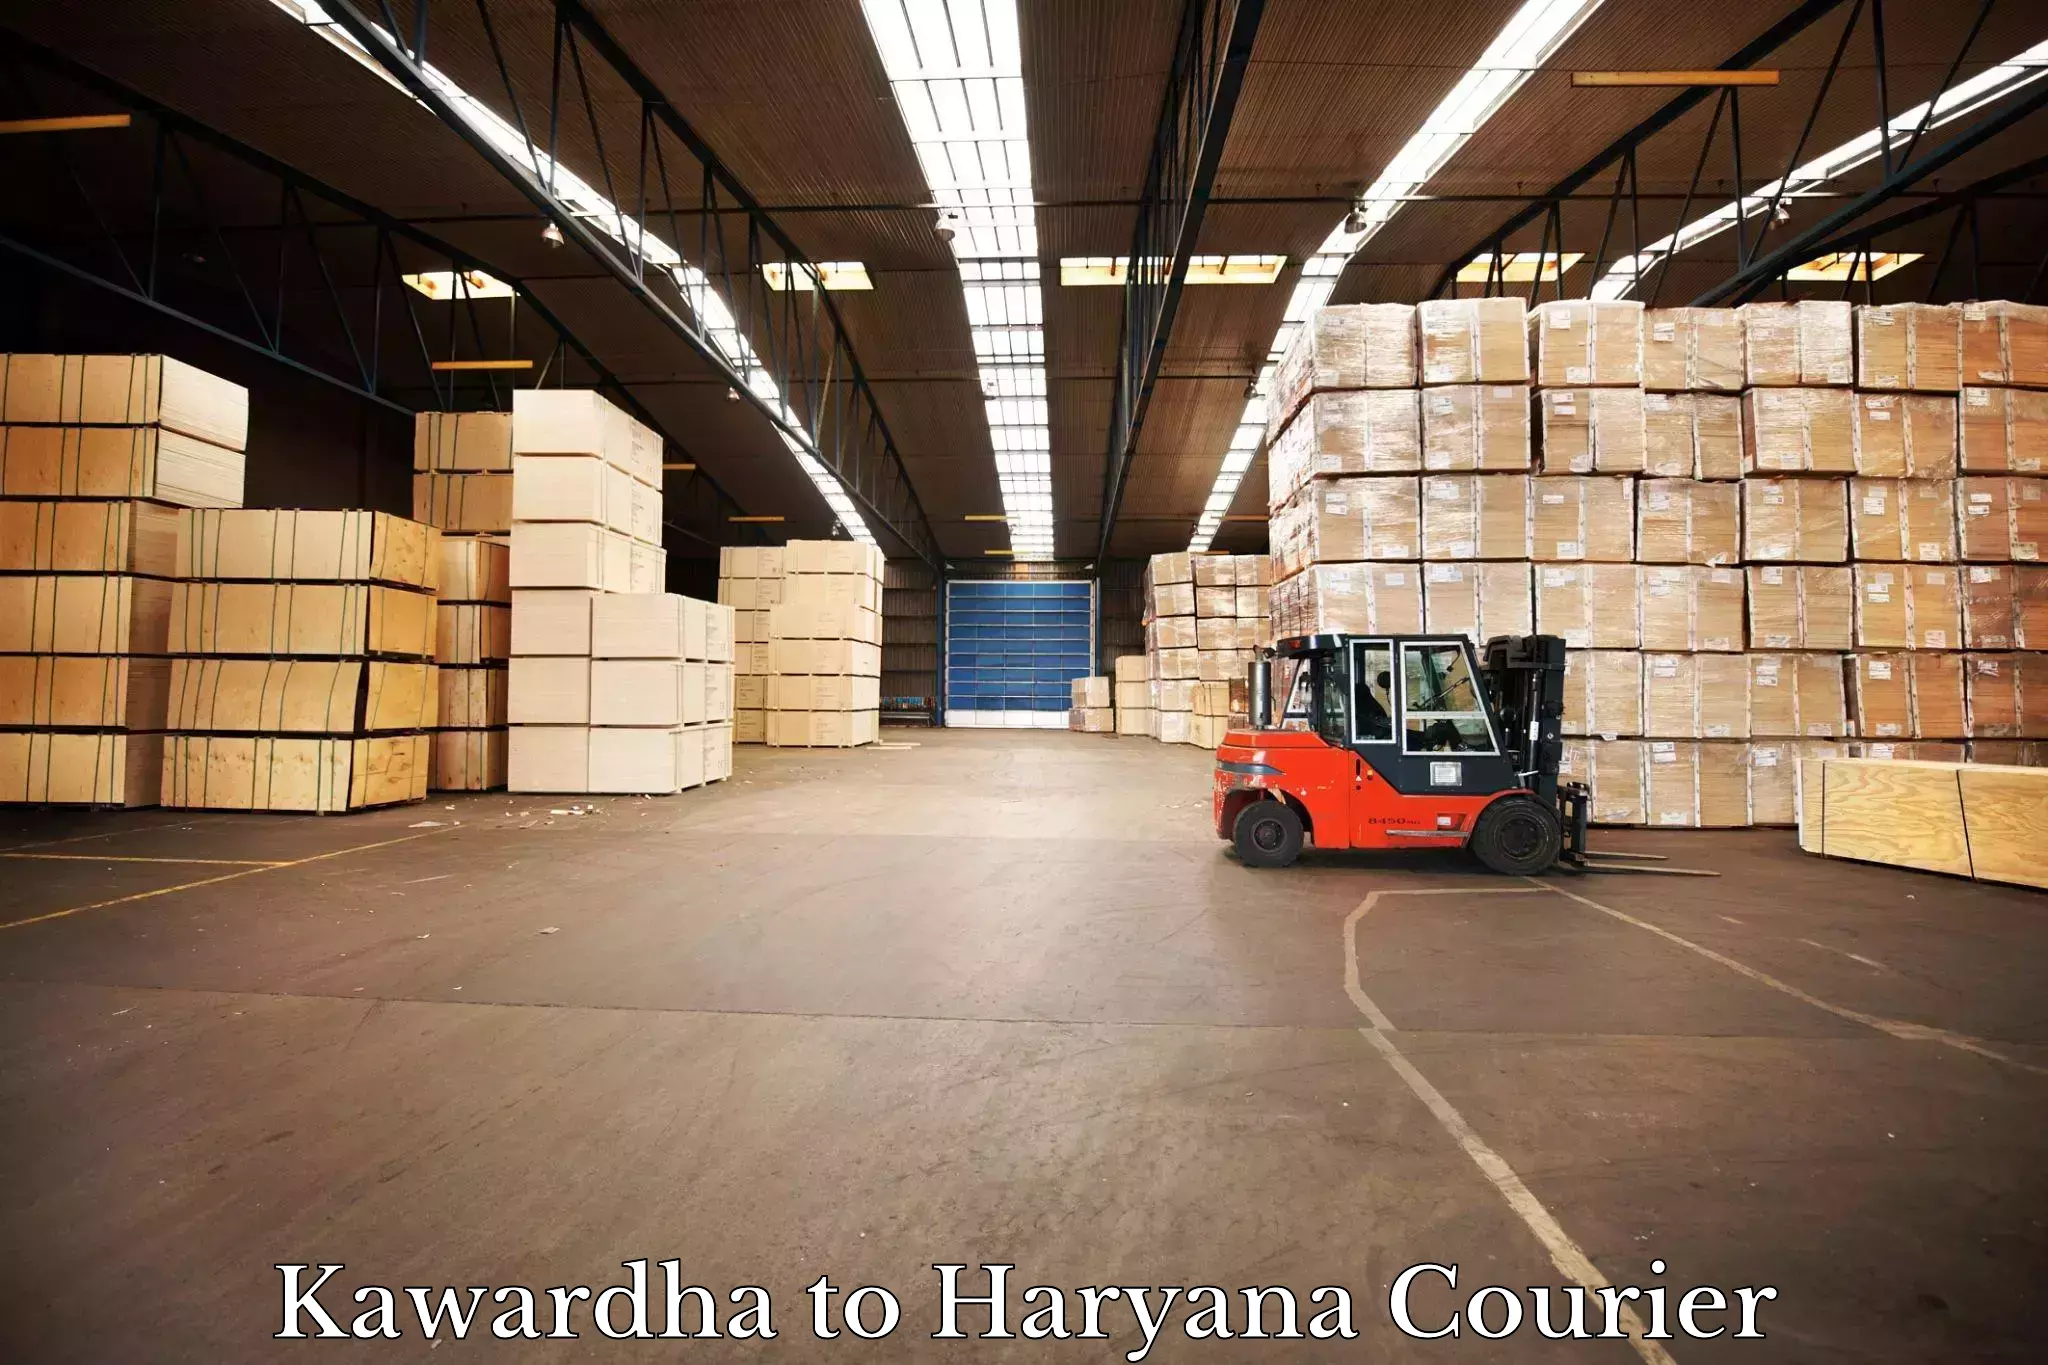 Courier service booking Kawardha to Ambala